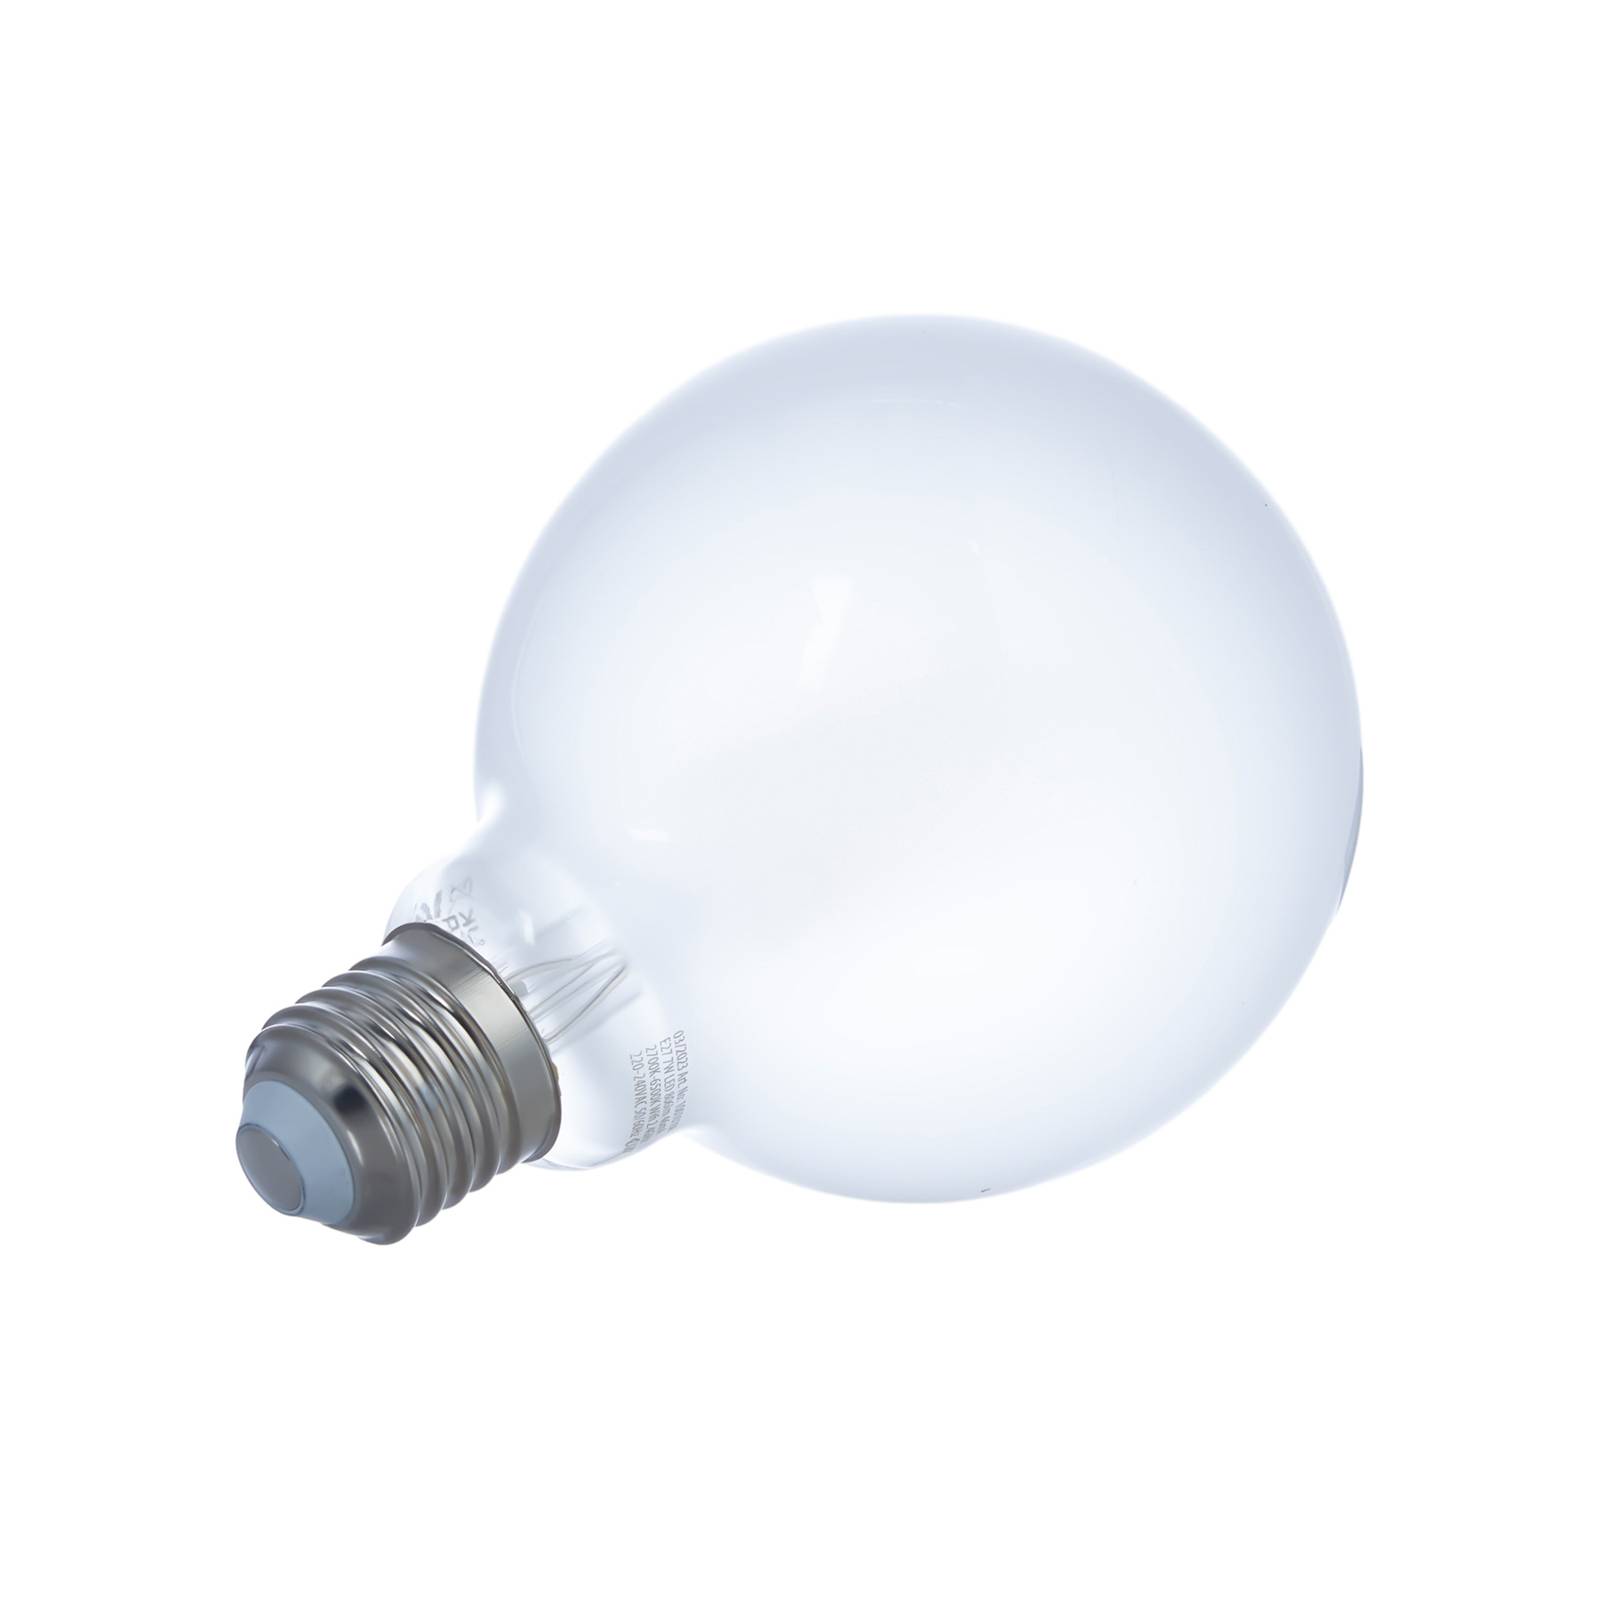 LUUMR Smart LED-lampuppsättning med 3 E27 G95 7W matt Tuya